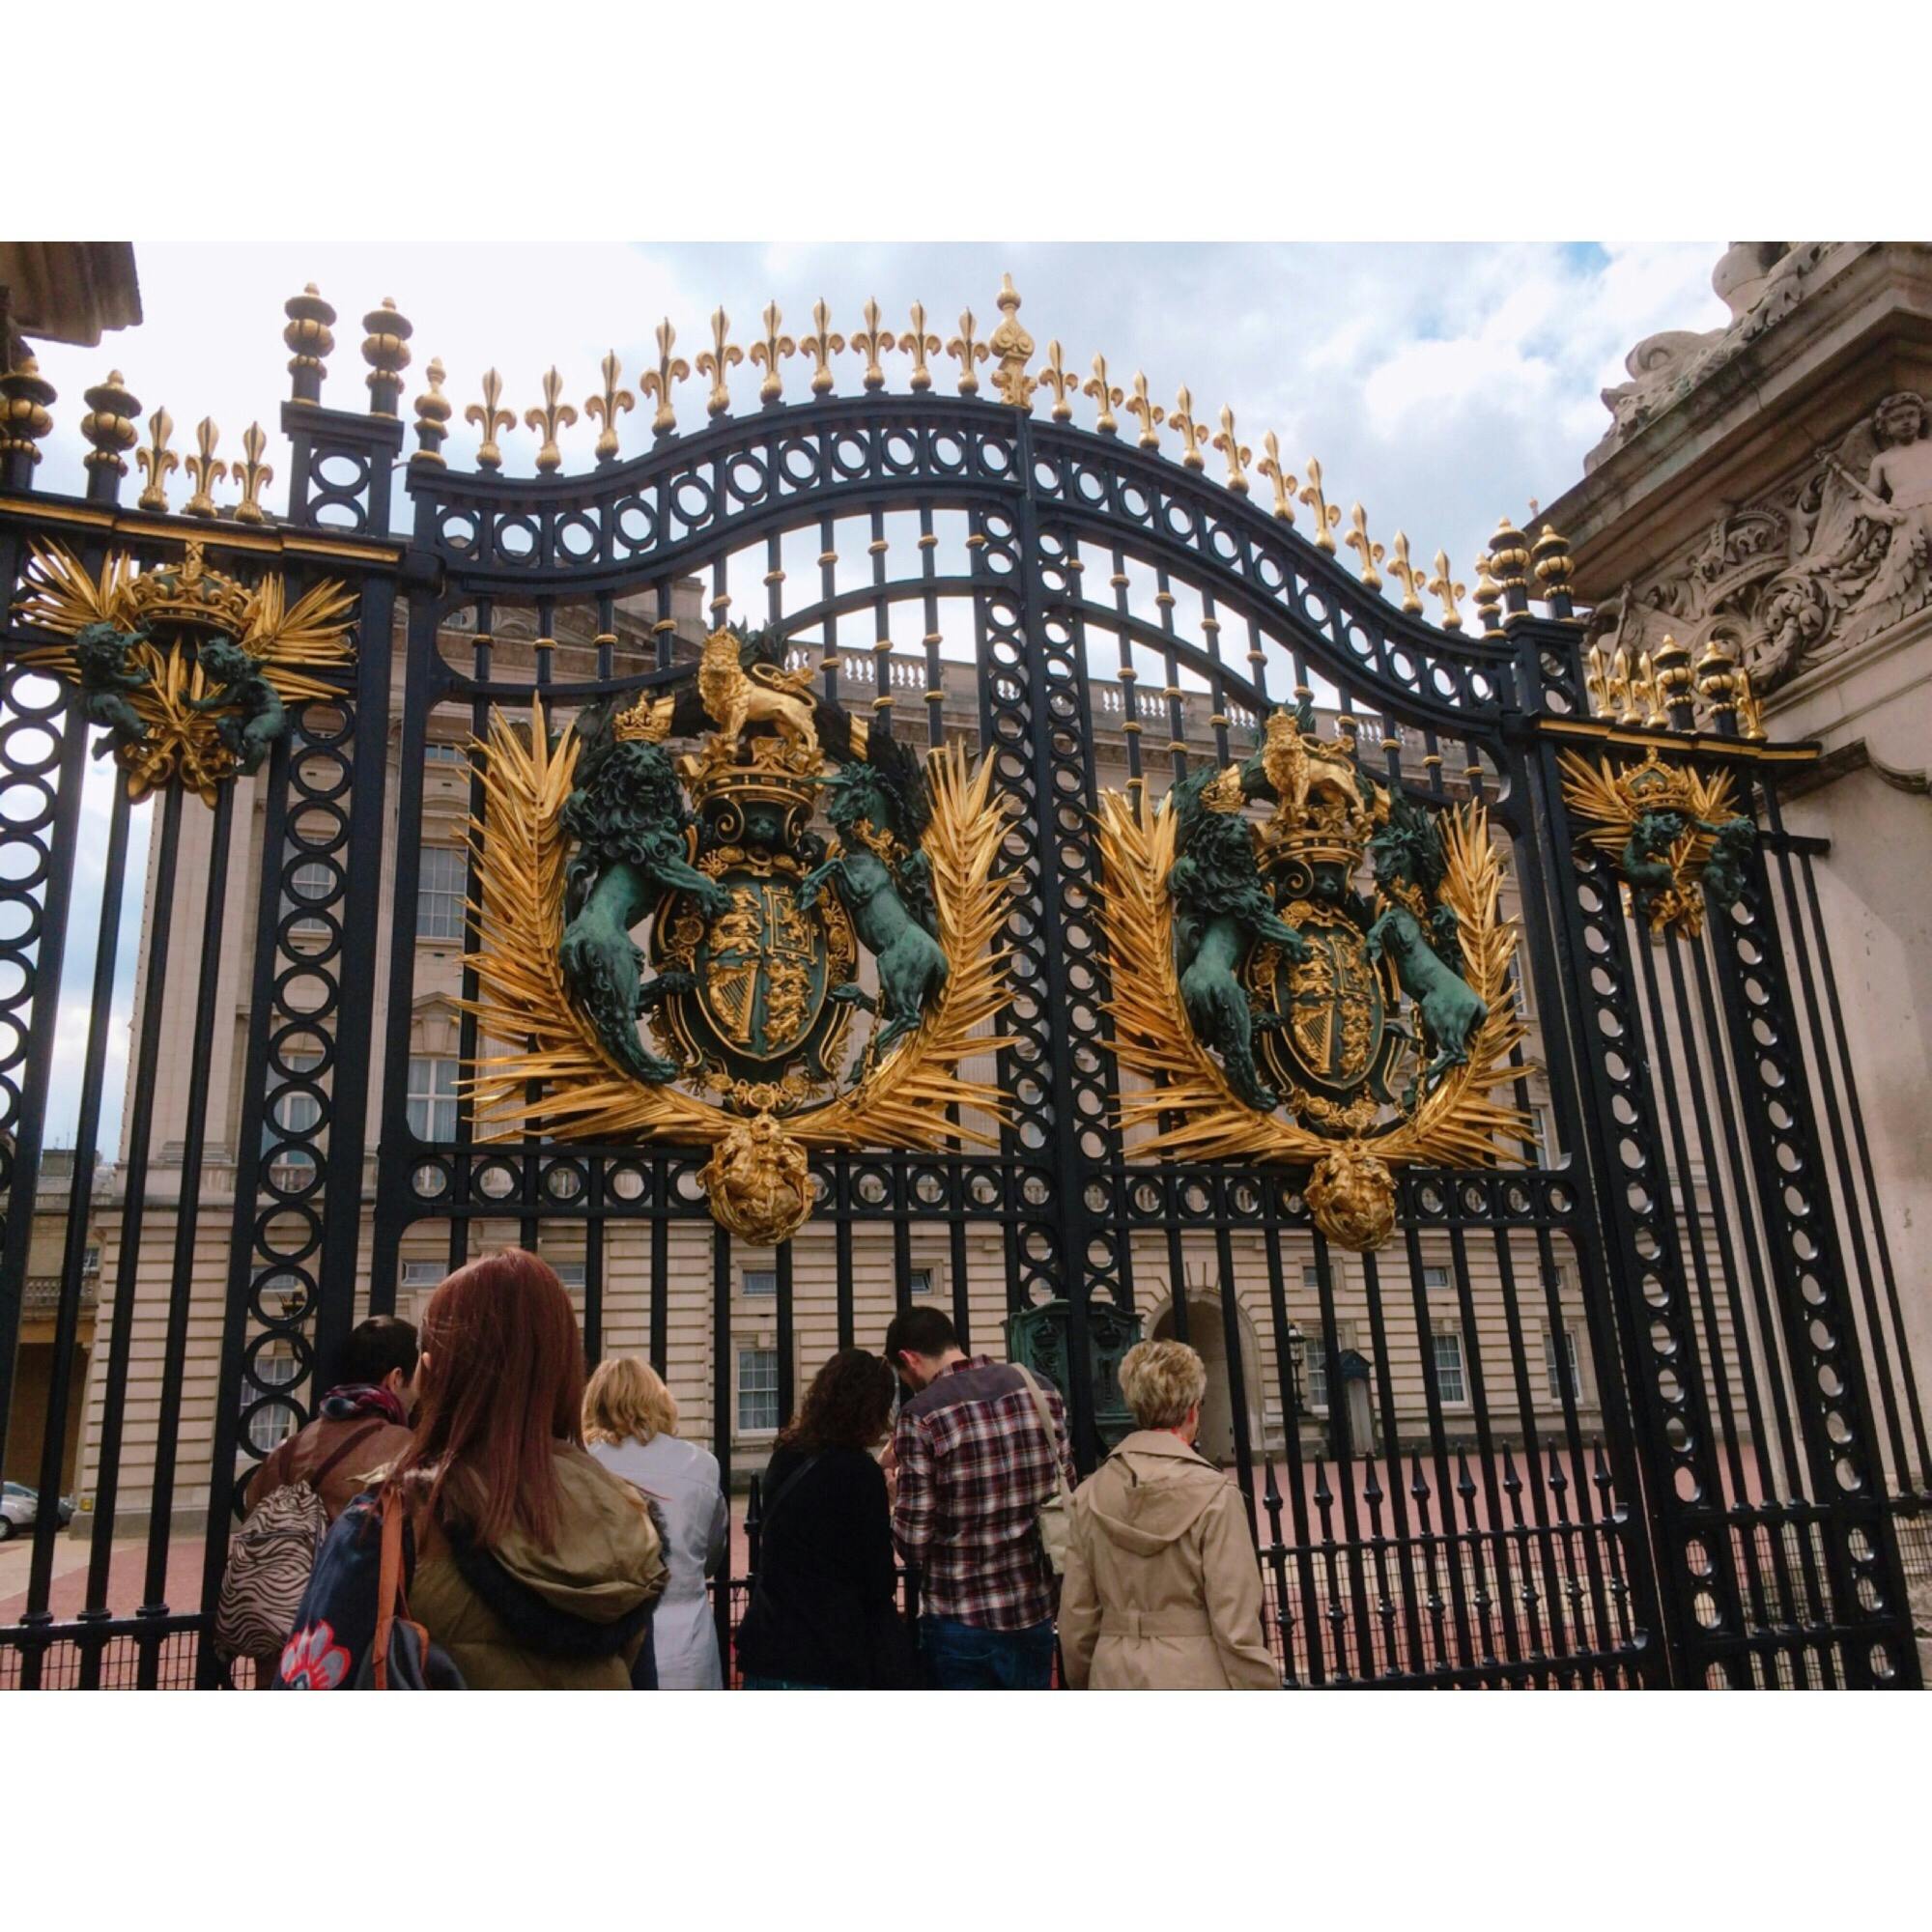 バッキンガム宮殿 Buckingham Palace の投稿写真 感想 みどころ イギリス ロンドンバッキンガム宮殿前です イギリス トリップノート